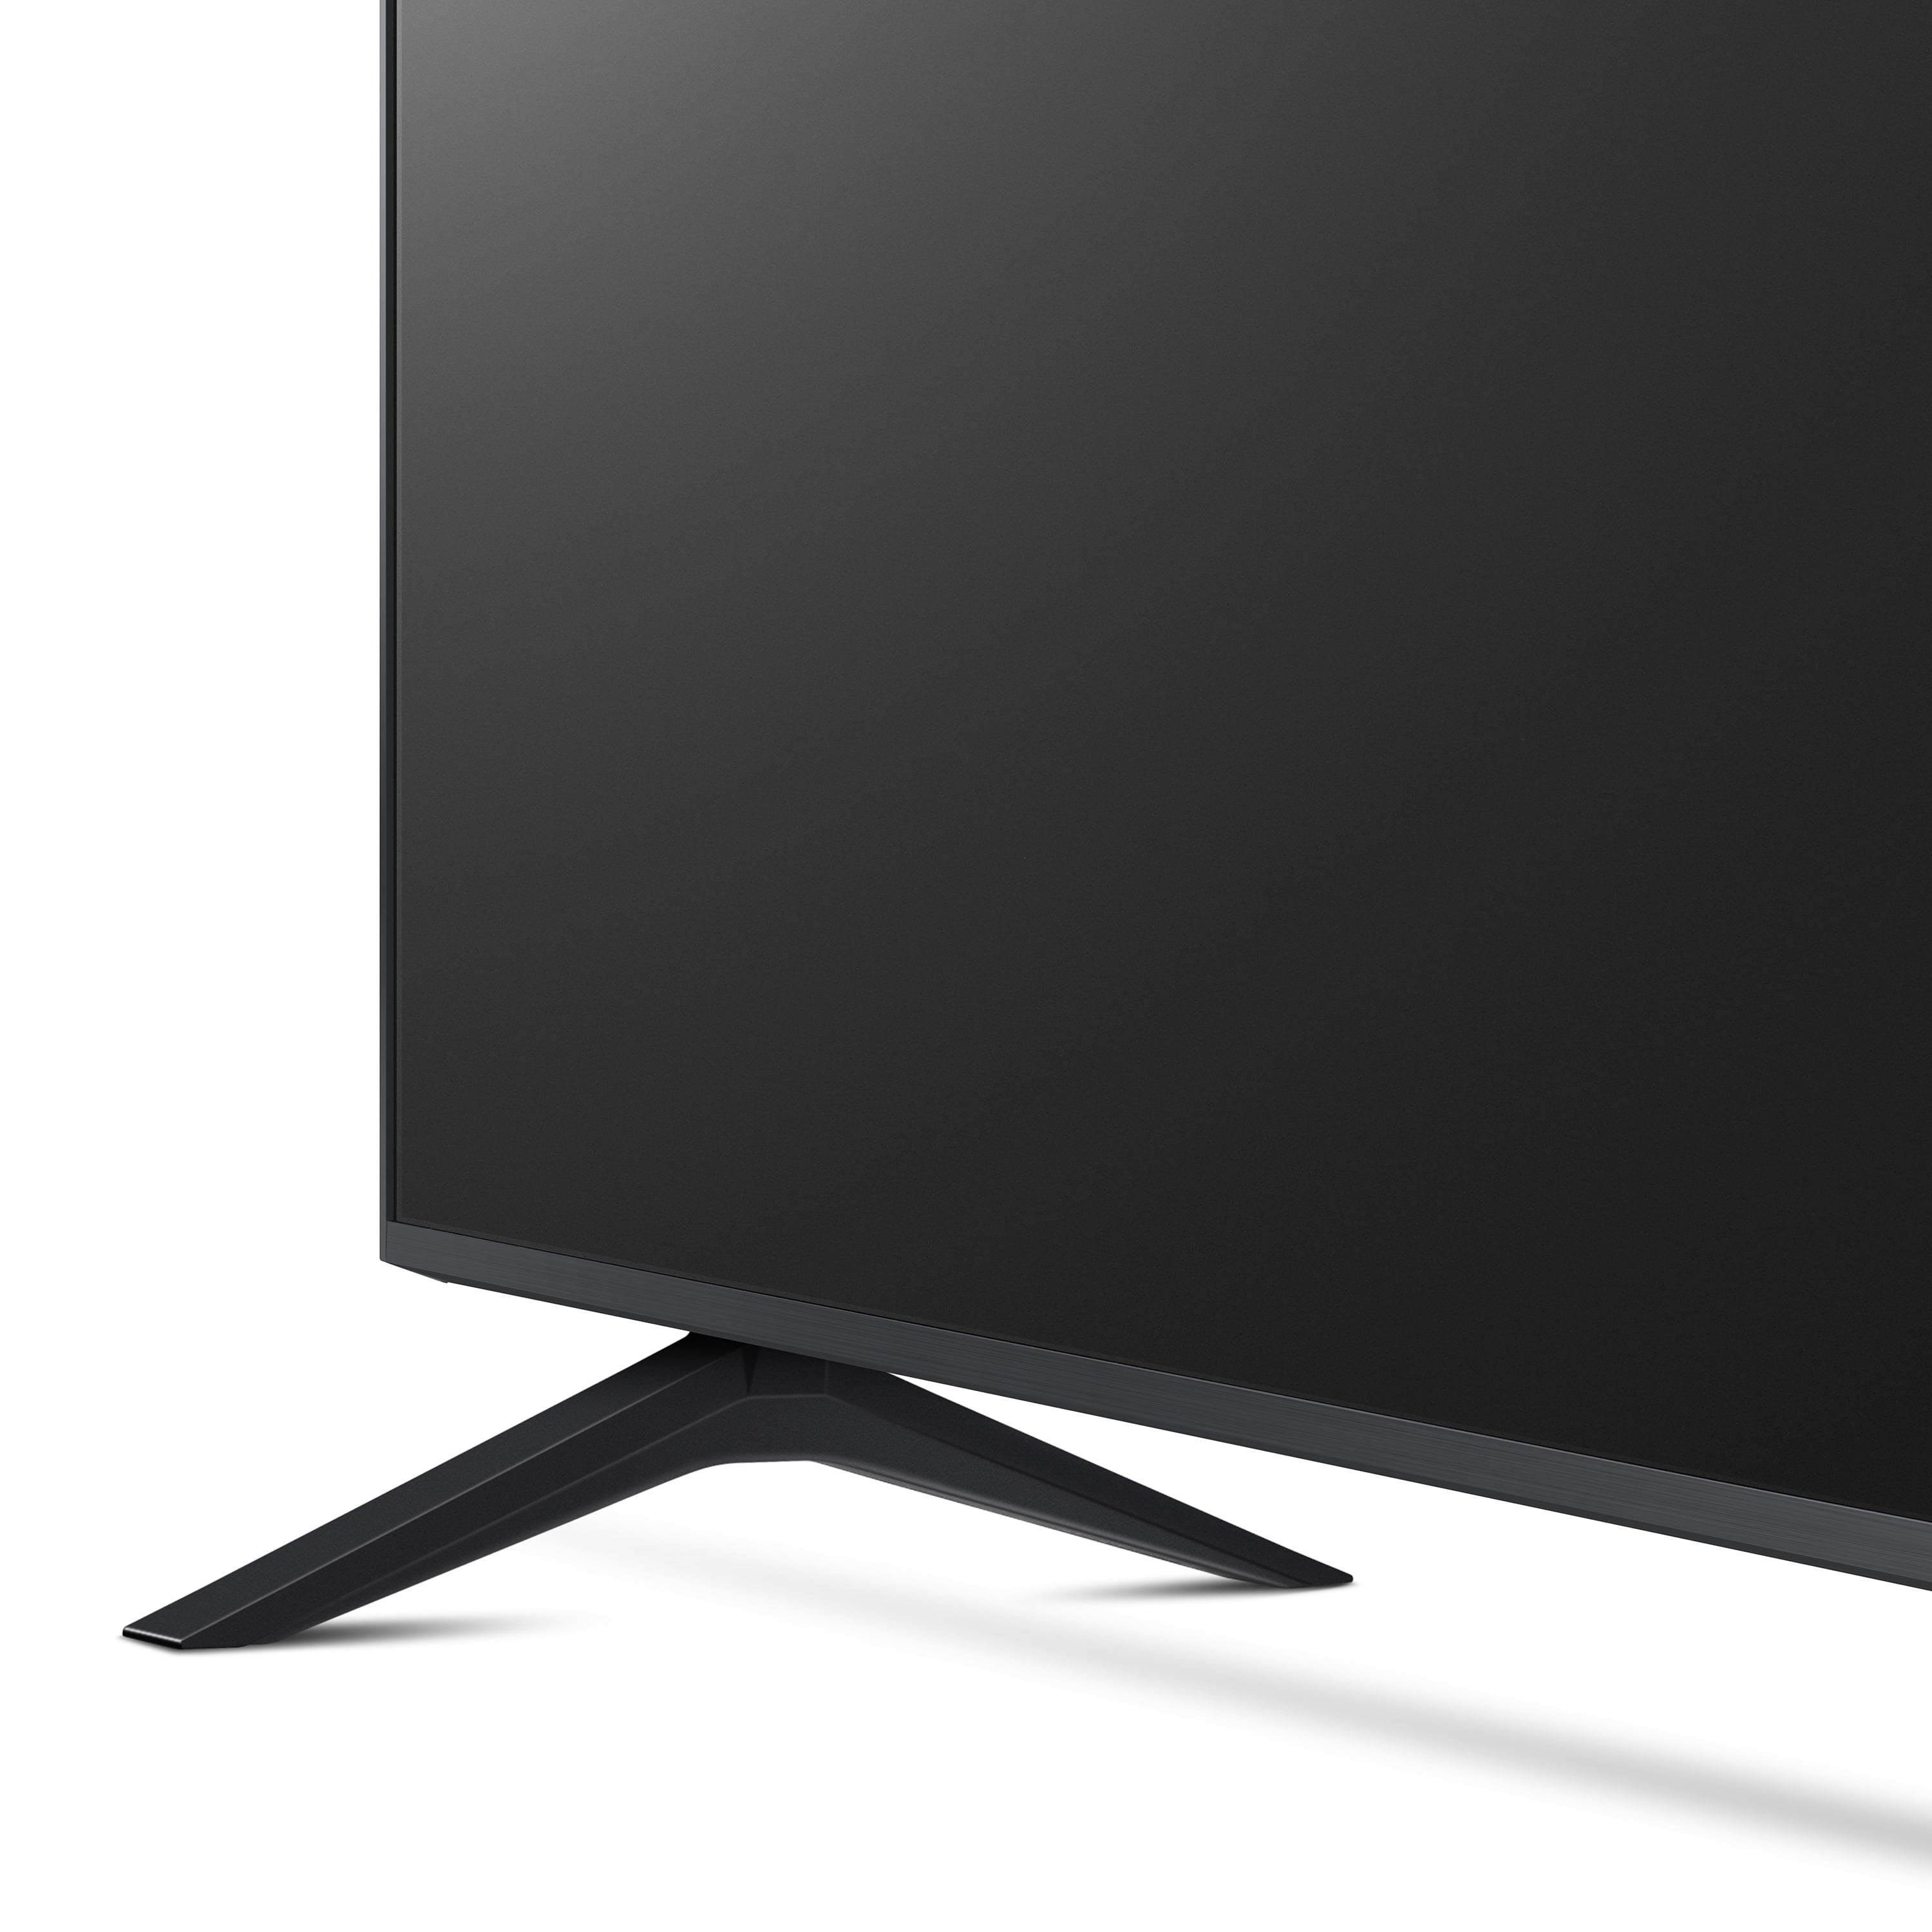 Smart TV LG 70 pouces 4K UHD 70UP7550